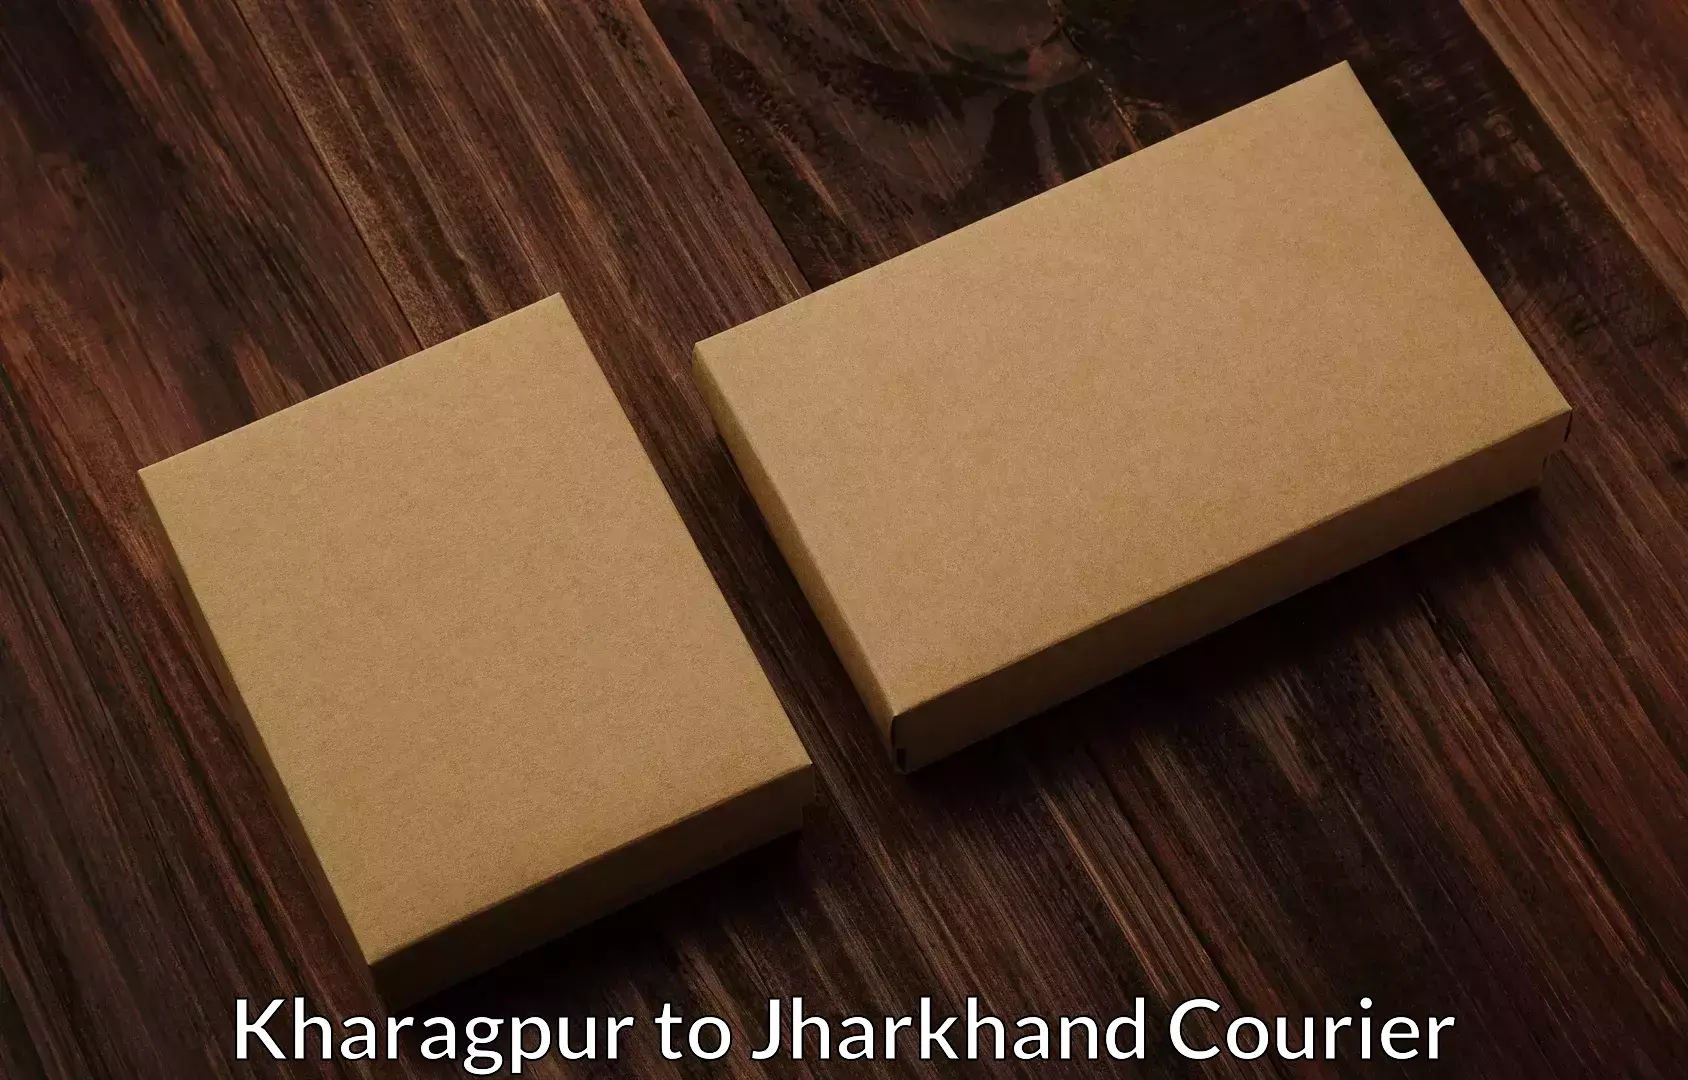 Budget-friendly movers Kharagpur to Isri